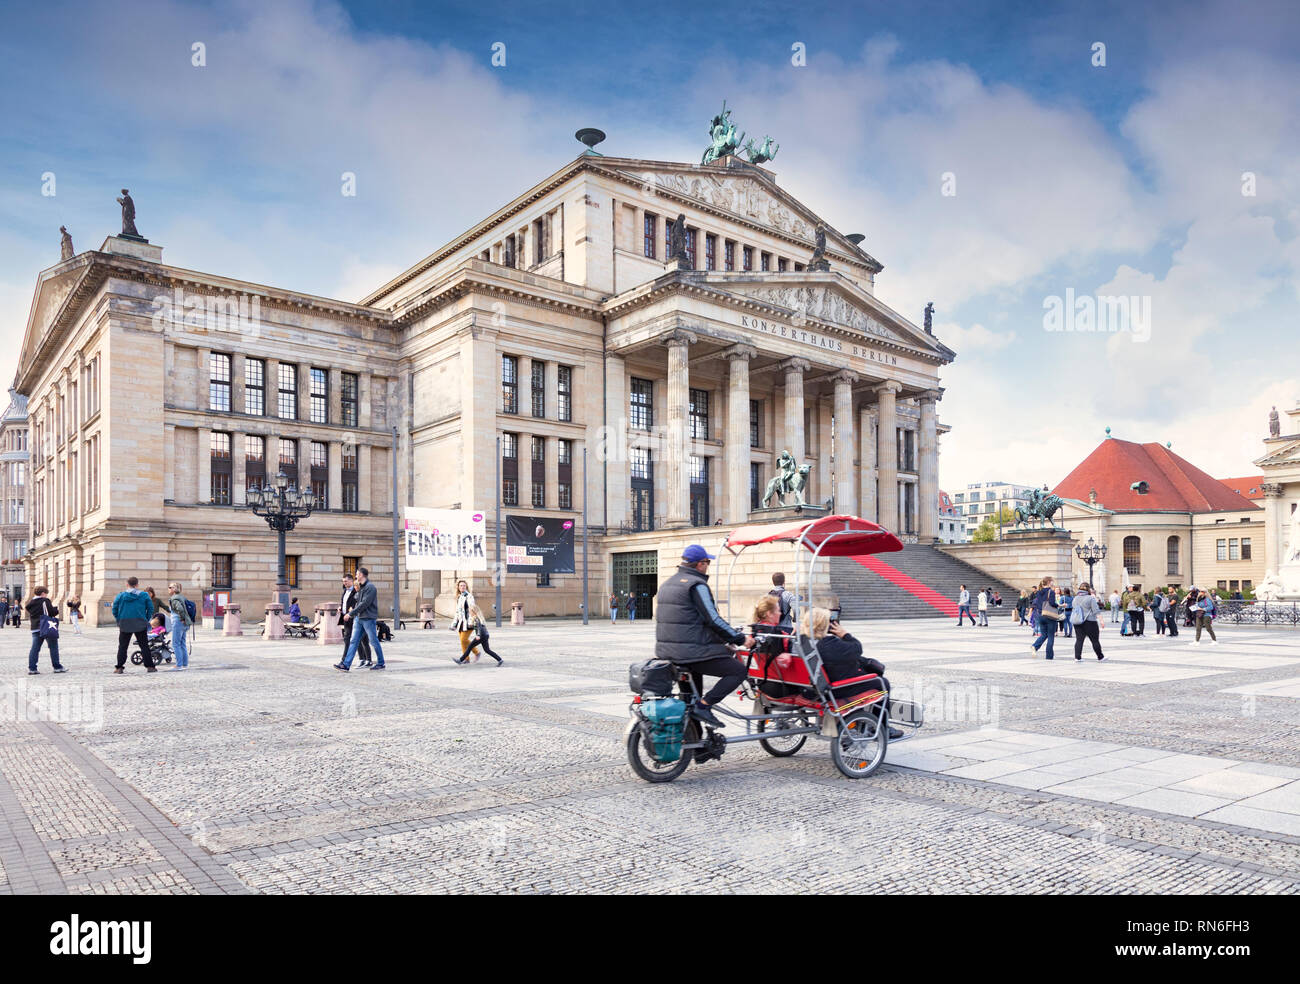 22. September 2018: Berlin - Sightseeing in den Gendarmenmarkt mit dem Konzerthaus und eine Rikscha oder Fahrrad Taxi. Leichte Bewegungsunschärfe auf dem Rad bei 100 Stockfoto